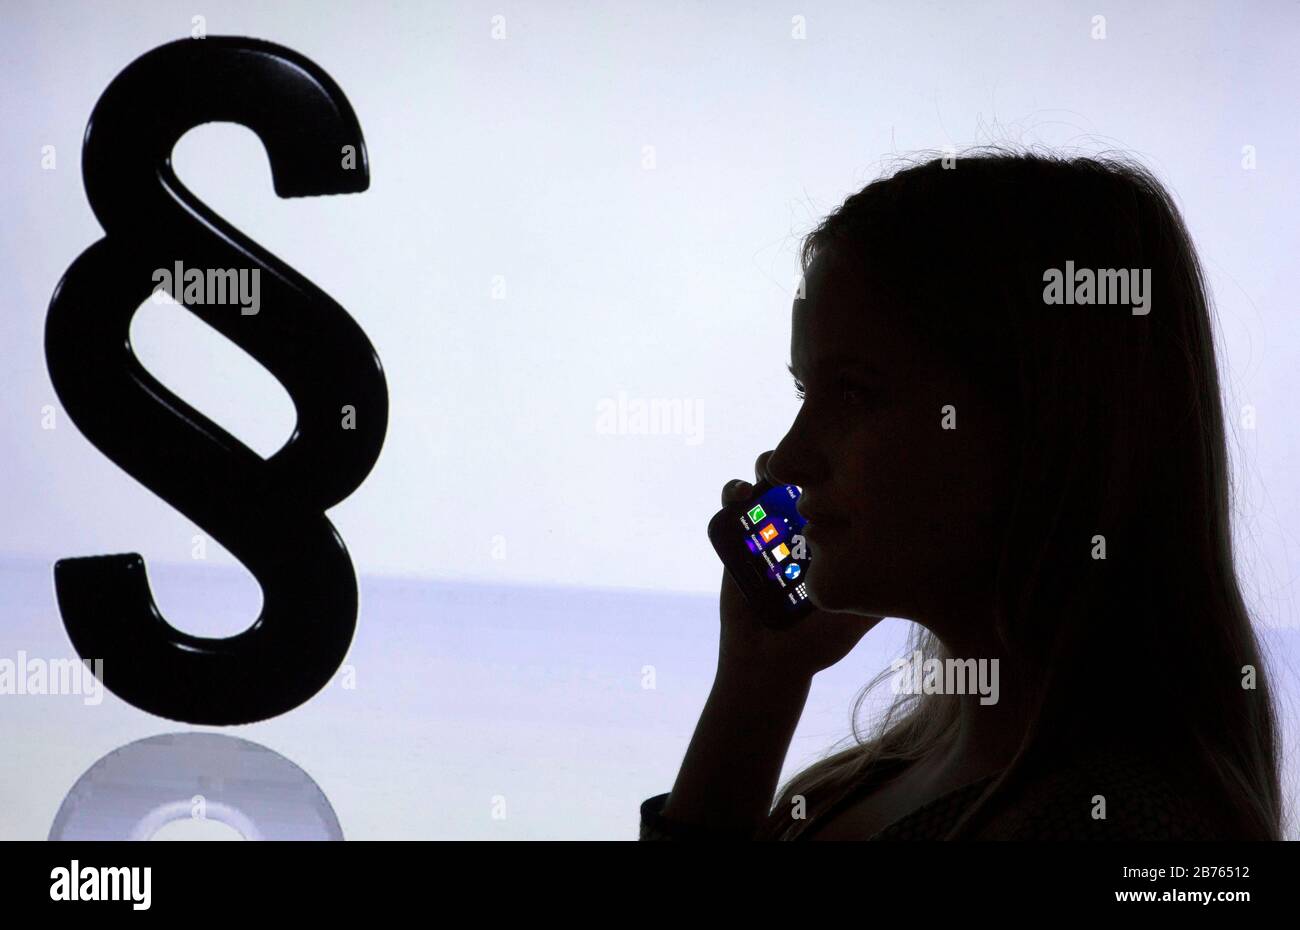 La silhouette d'une femme avec un smartphone dans sa main peut être vue devant un logo Paragrapen, le 12.01.2016. Consultation téléphonique en matière juridique. [traduction automatique] Banque D'Images